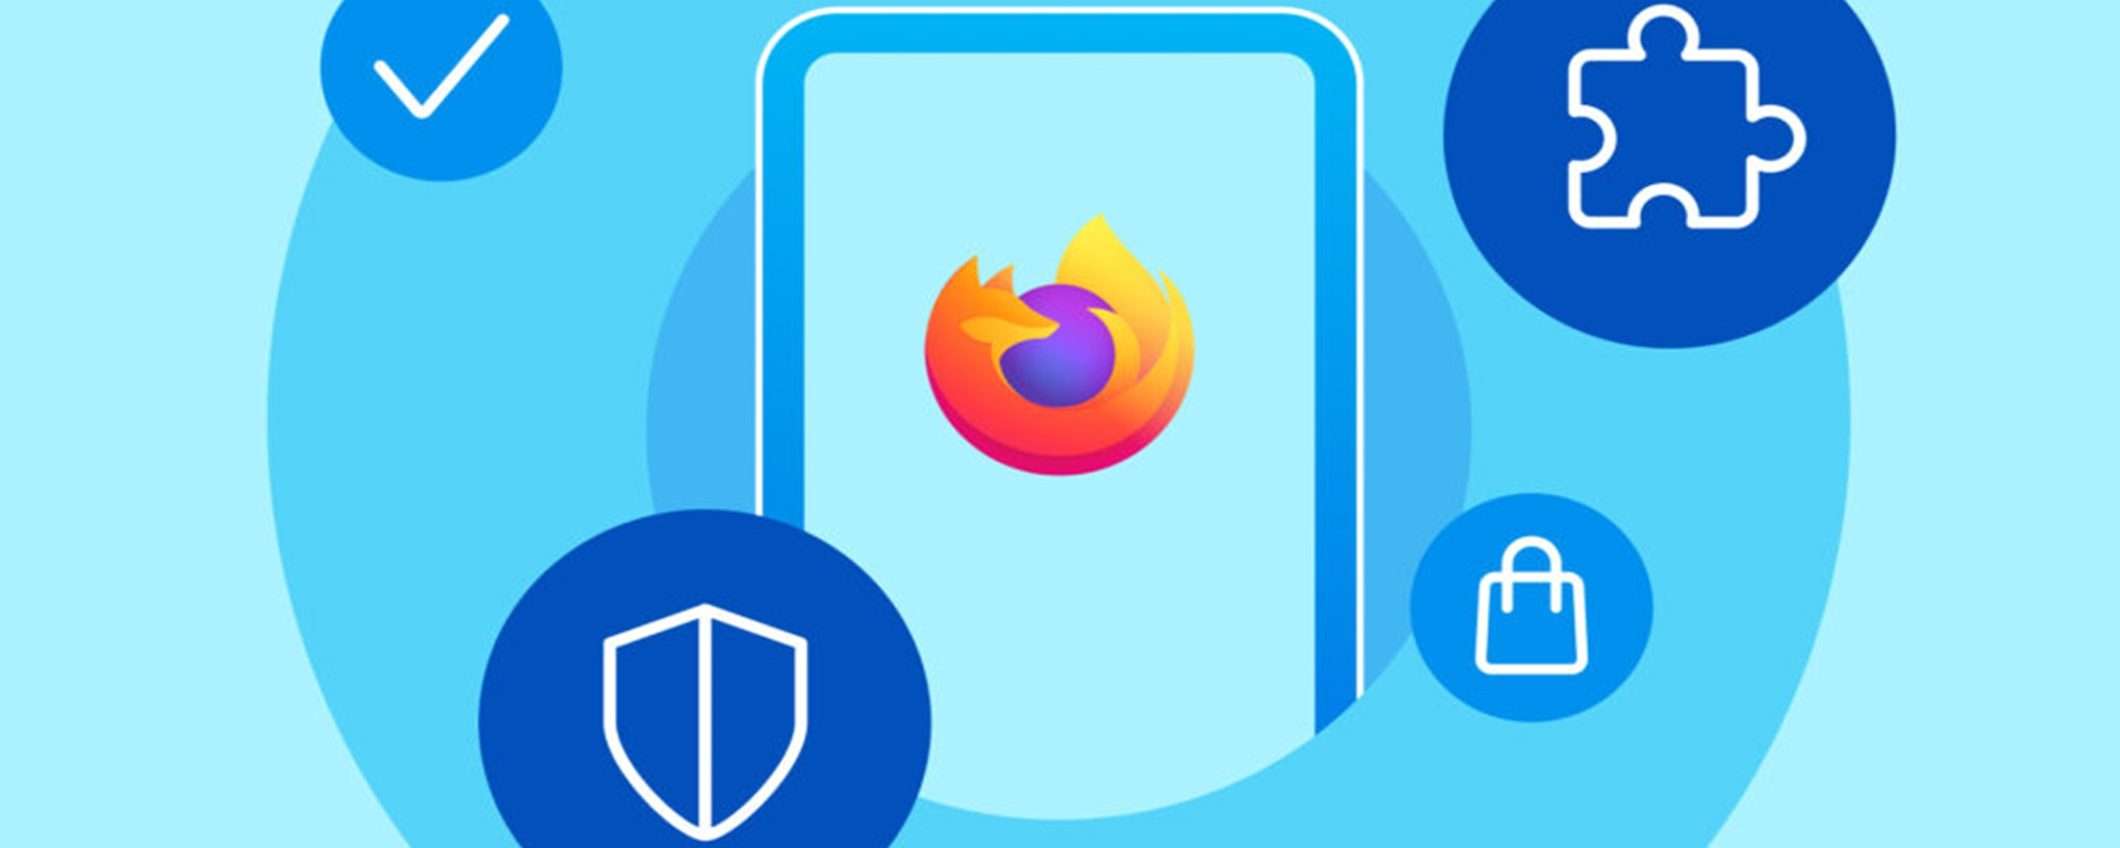 Firefox per Android supporta oltre 450 componenti aggiuntivi